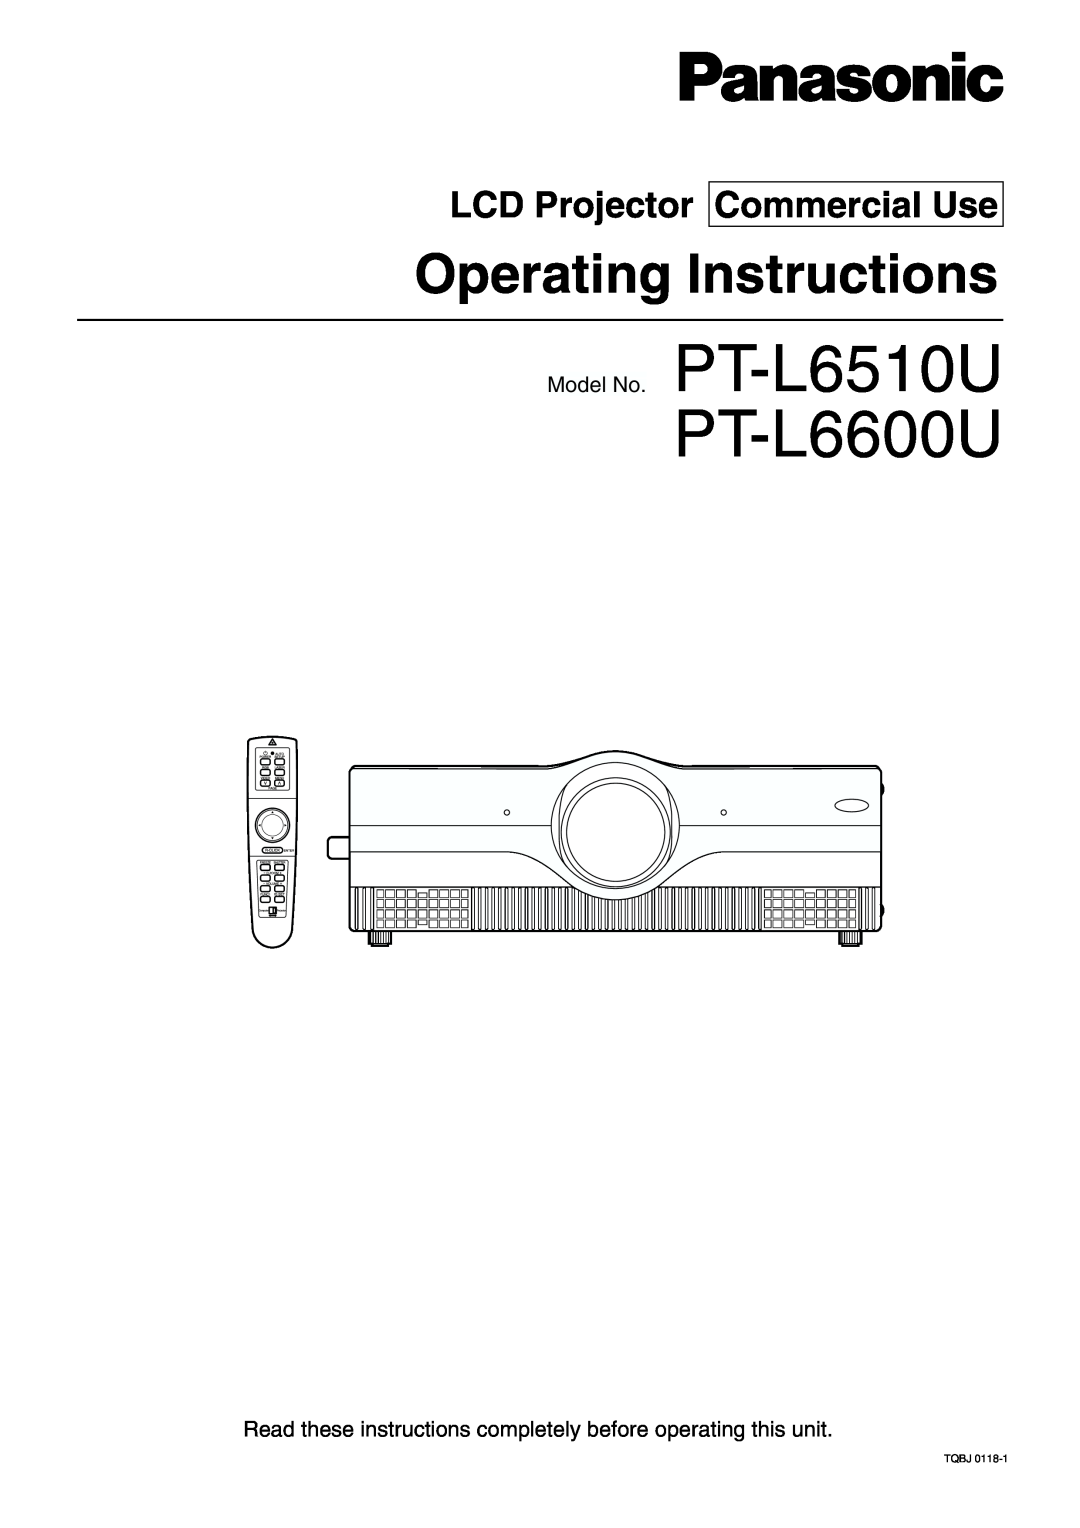 Panasonic manual LCD Projector Commercial Use, Model No. PT-L6510U PT-L6600U, Operating Instructions 